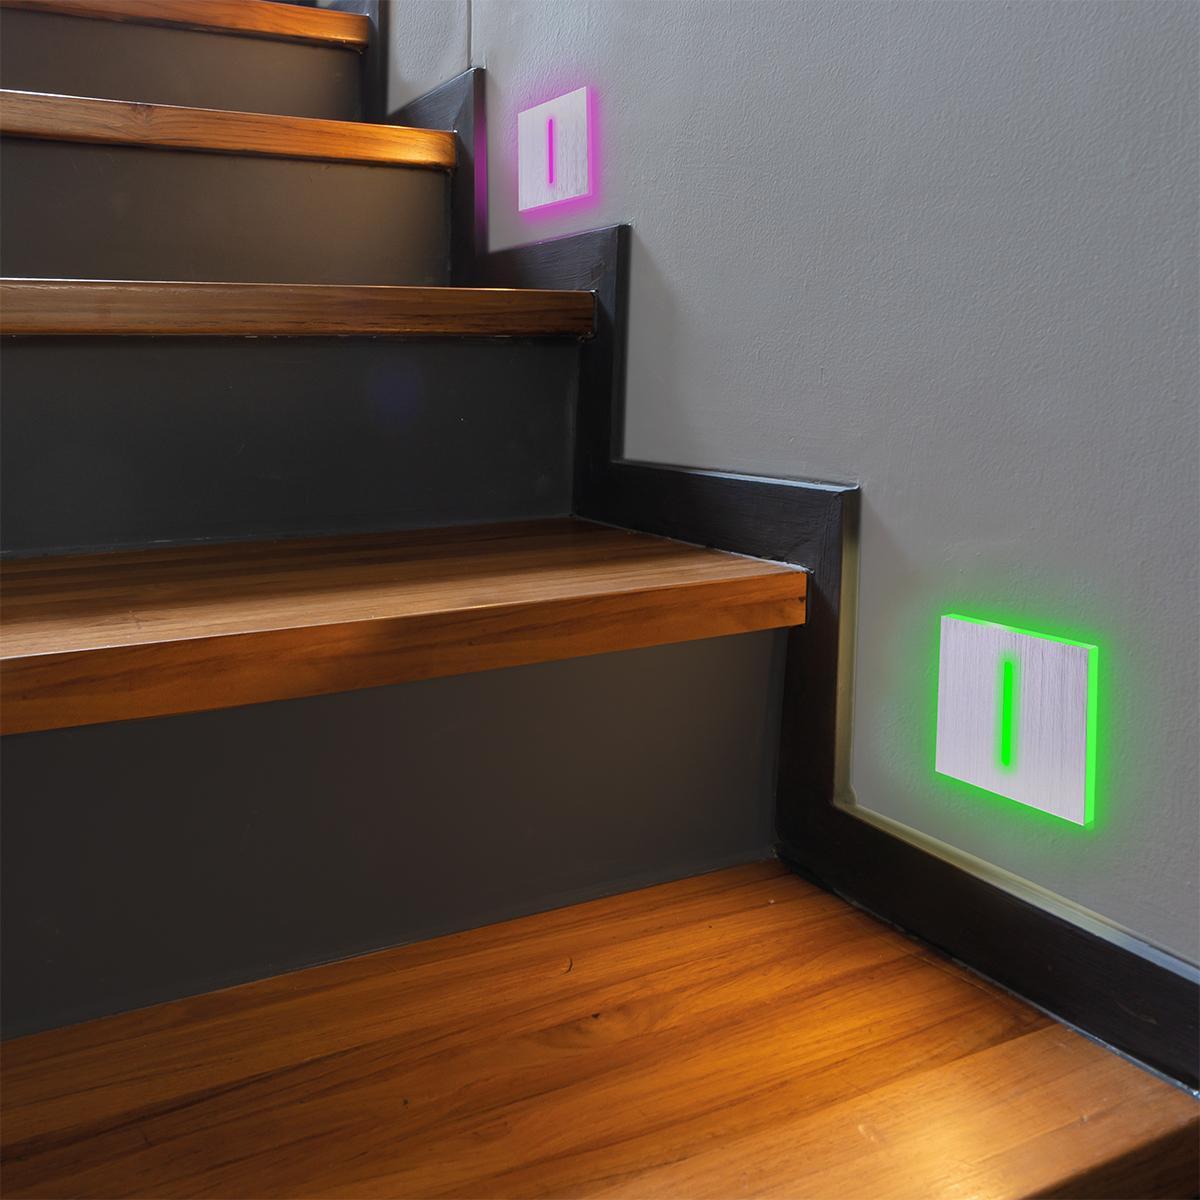 LED Treppenbeleuchtung 230V Treppenlicht eckig Alu-gebürstet - Lichtfarbe: RGB Kaltweiß 3W - Lichtaustritt: Fokus